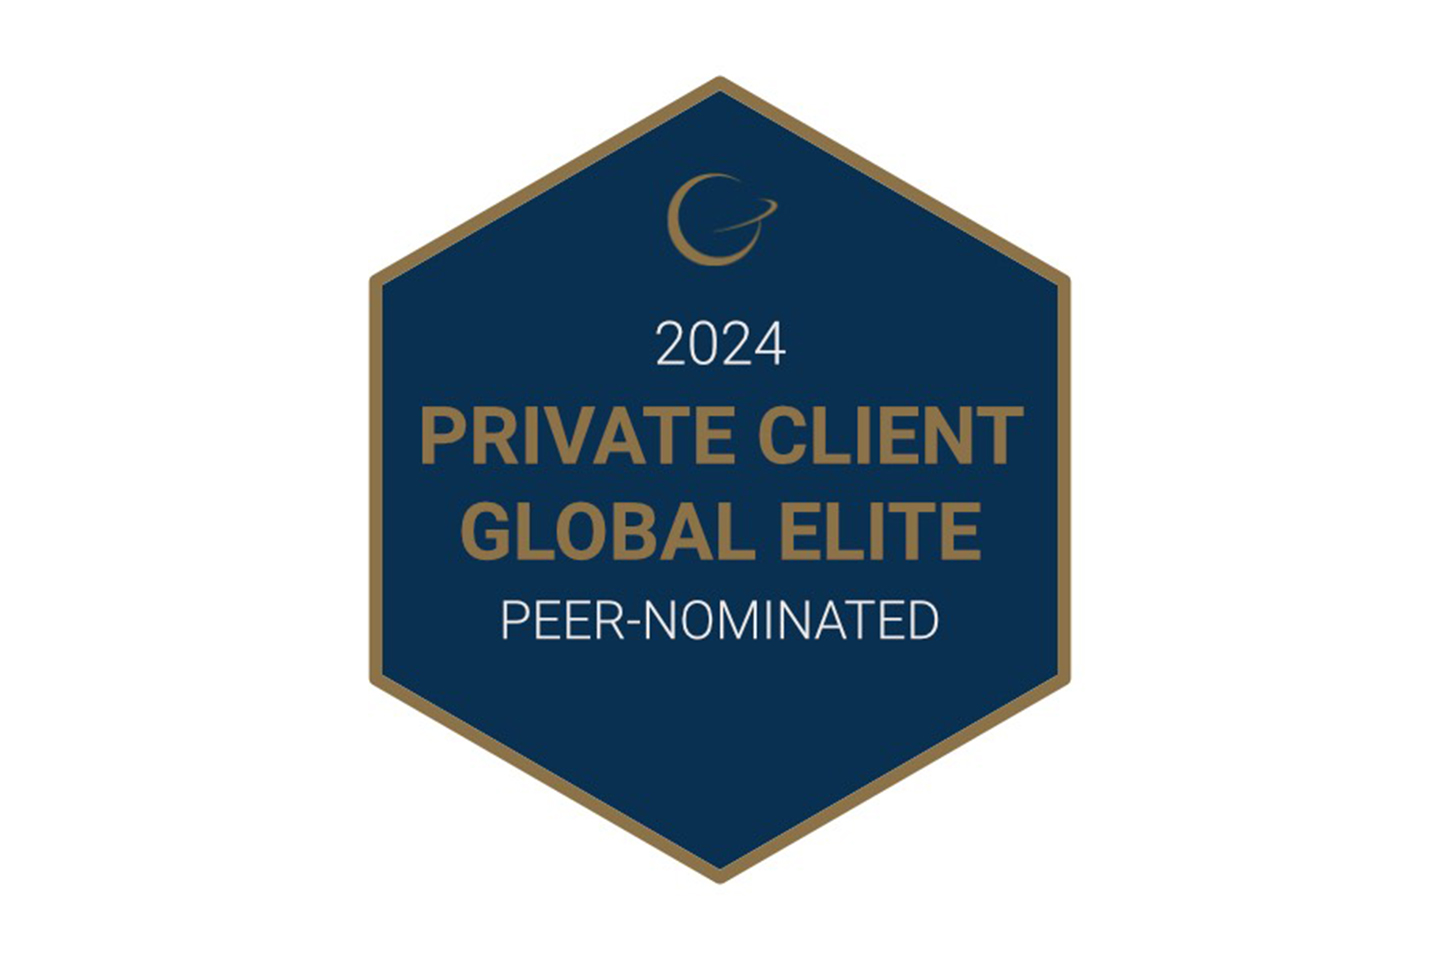 Global elite, peer nominated 2024